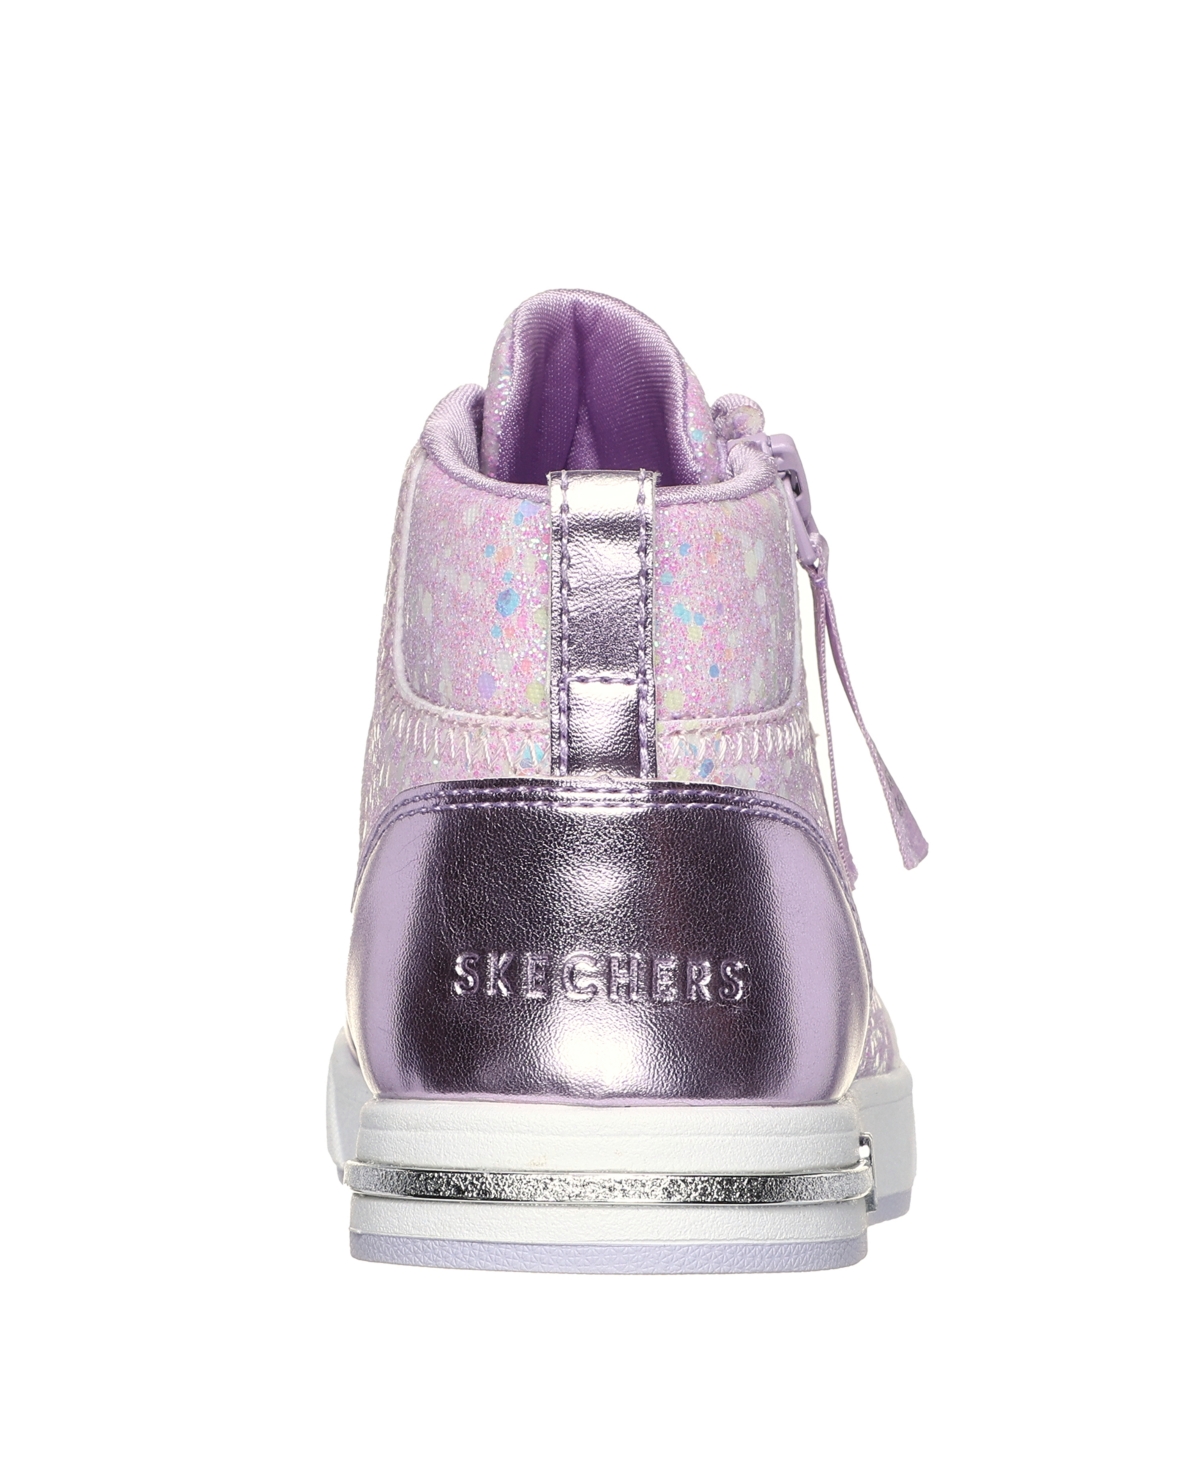 Shop Skechers Little Girls Shoutouts In Lavender